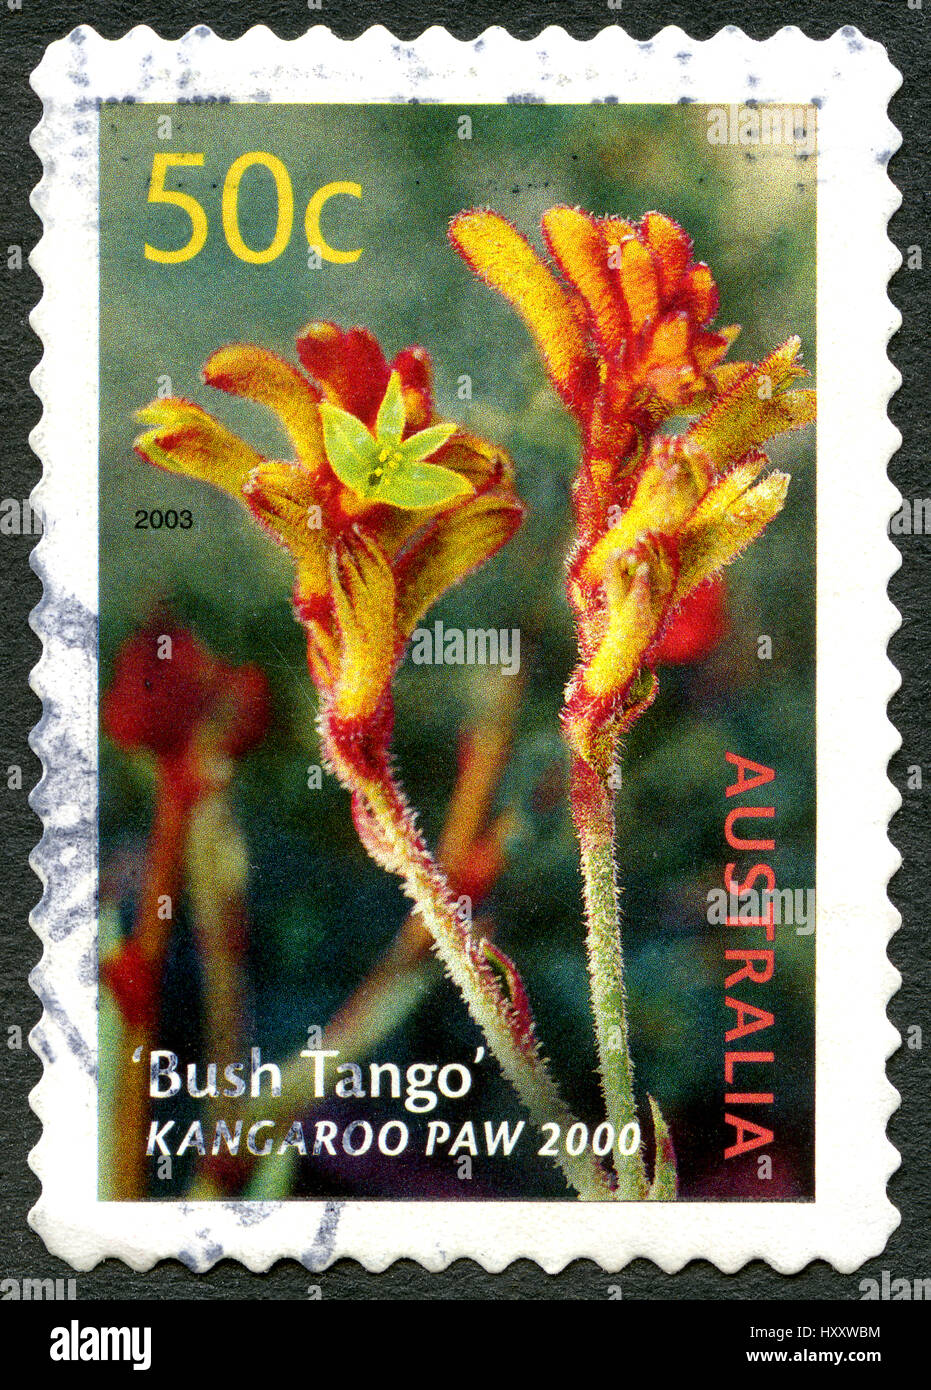 ASUTRALIA - CIRCA 2003: Eine gebrauchte Briefmarke aus Australien, ein Bild der Kangaroo Paw Pflanze, auch bekannt als Bush Tango, circa 2003. Stockfoto